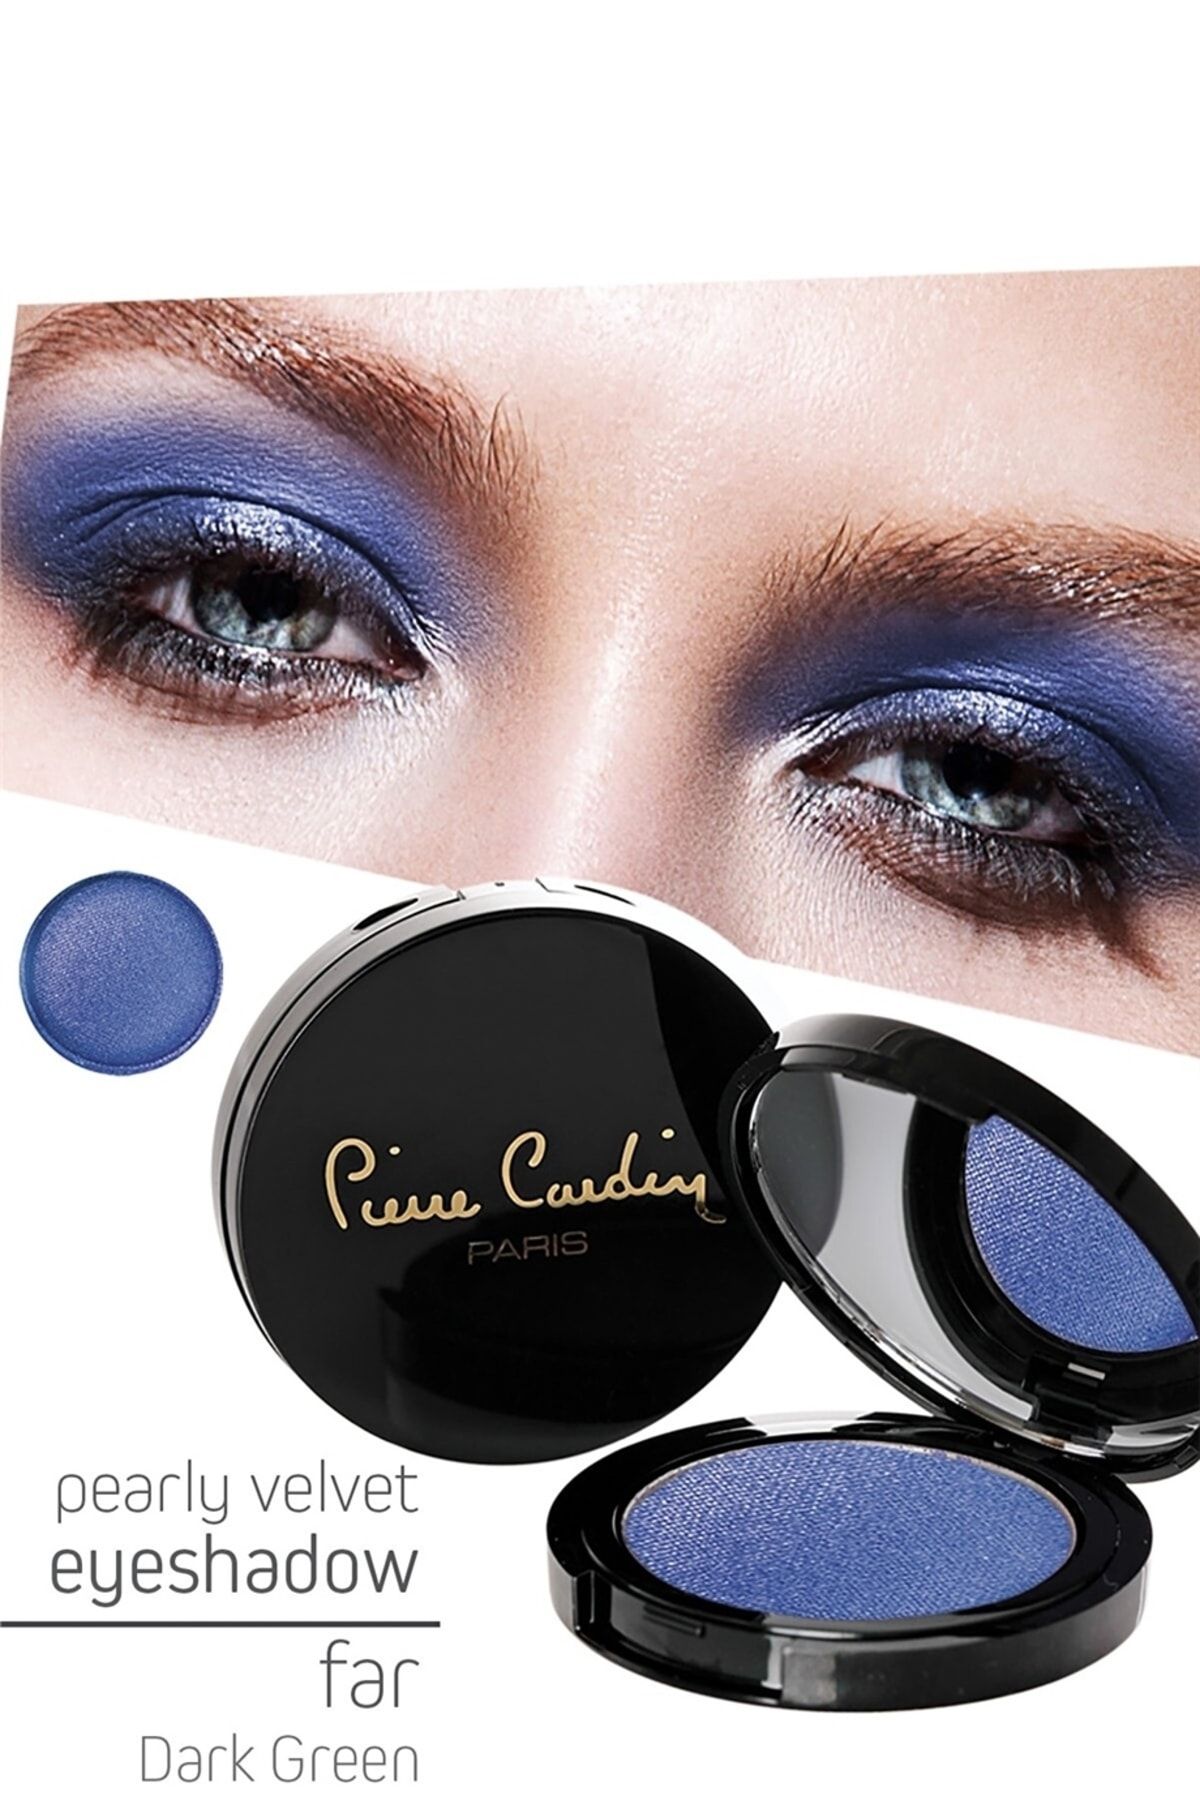 Pierre Cardin Pearly Velvet Eyeshadow Göz Farı - Indigo Blue 780 13258